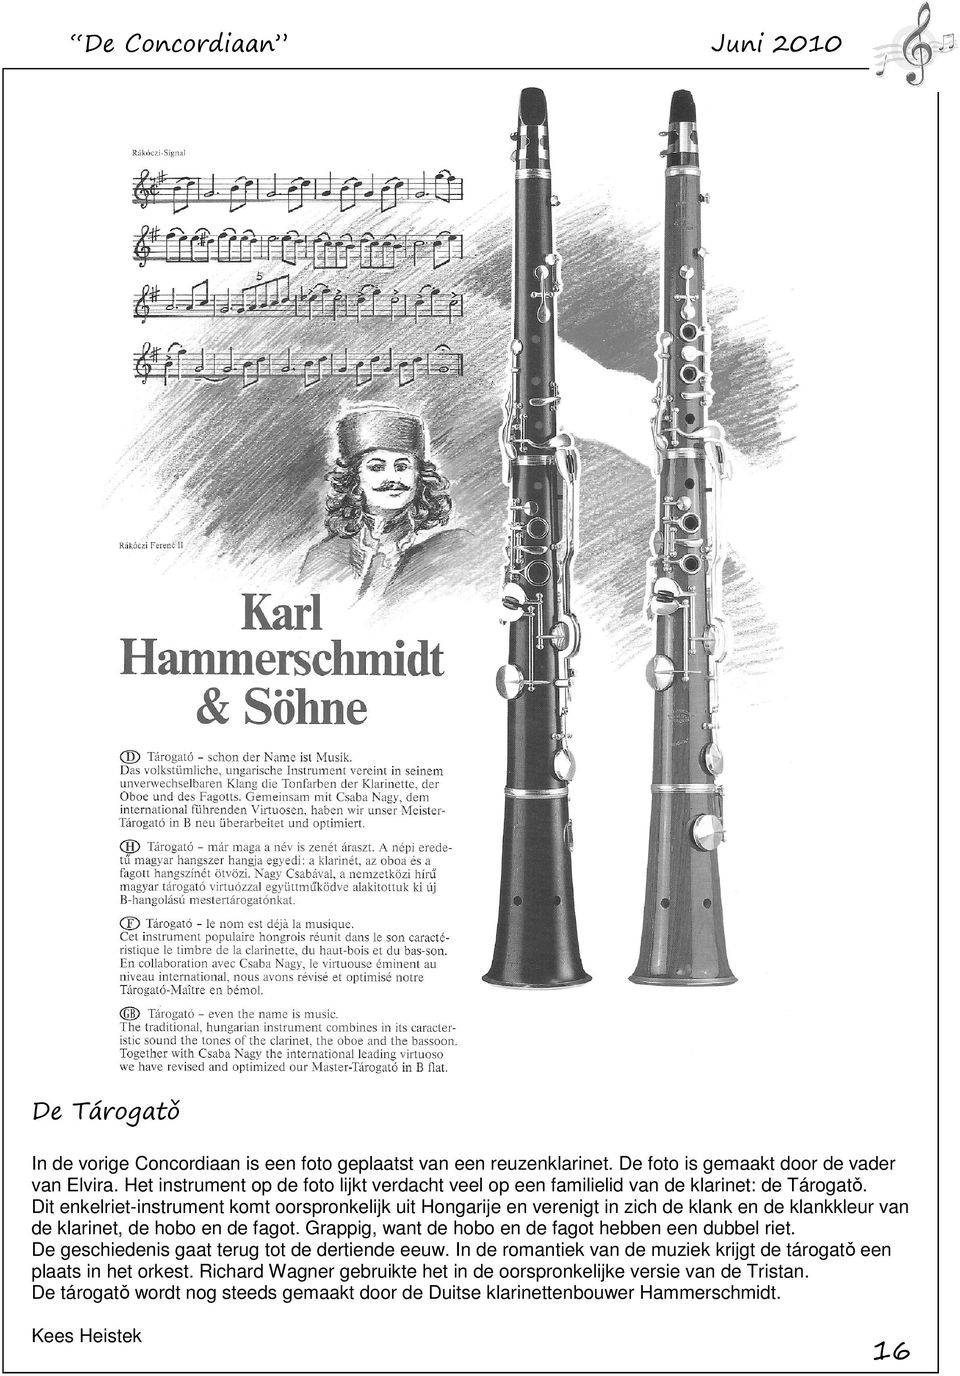 Dit enkelriet-instrument komt oorspronkelijk uit Hongarije en verenigt in zich de klank en de klankkleur van de klarinet, de hobo en de fagot.